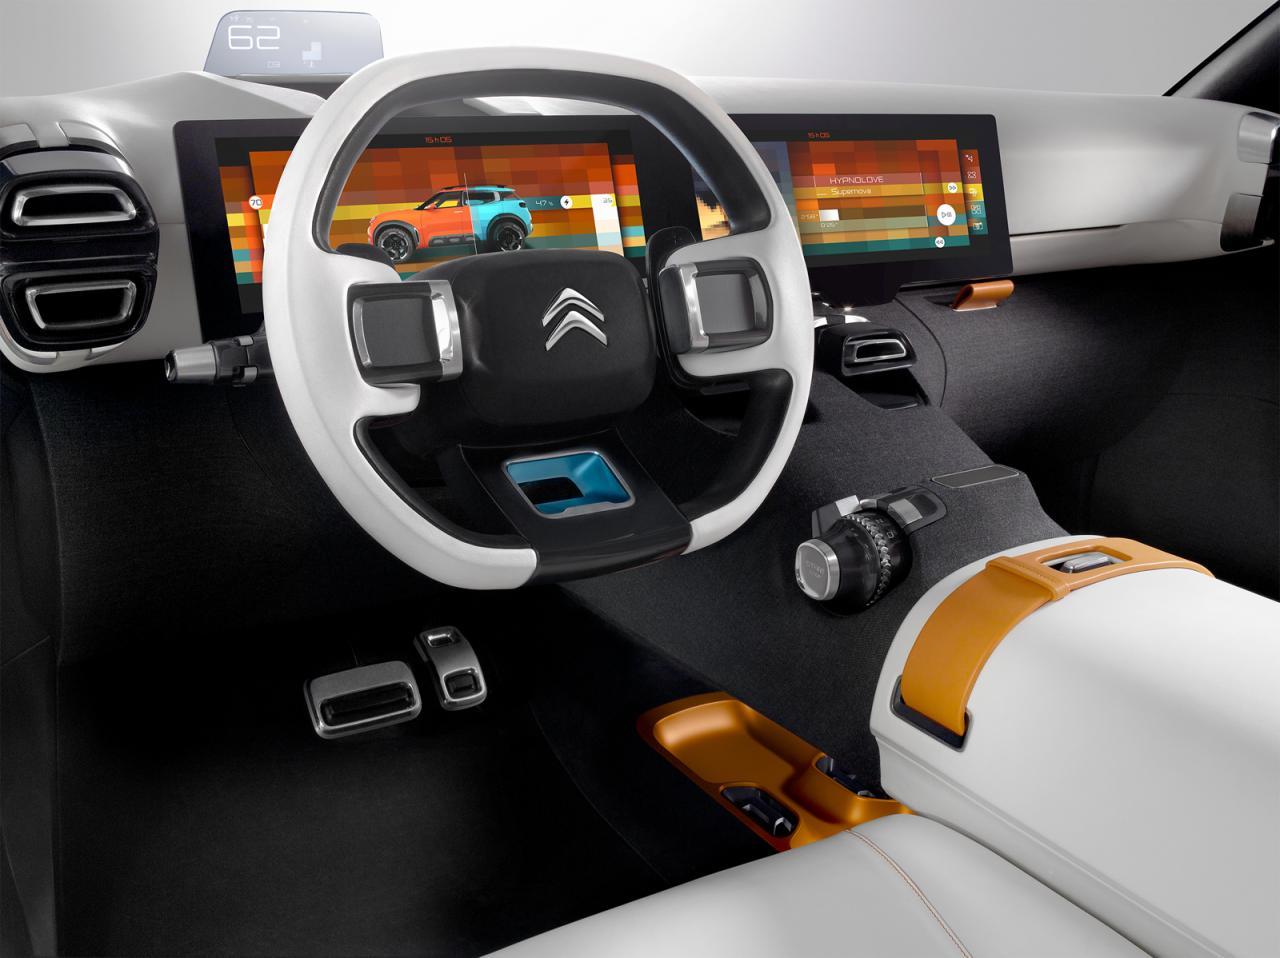 Citroen Aircross concept